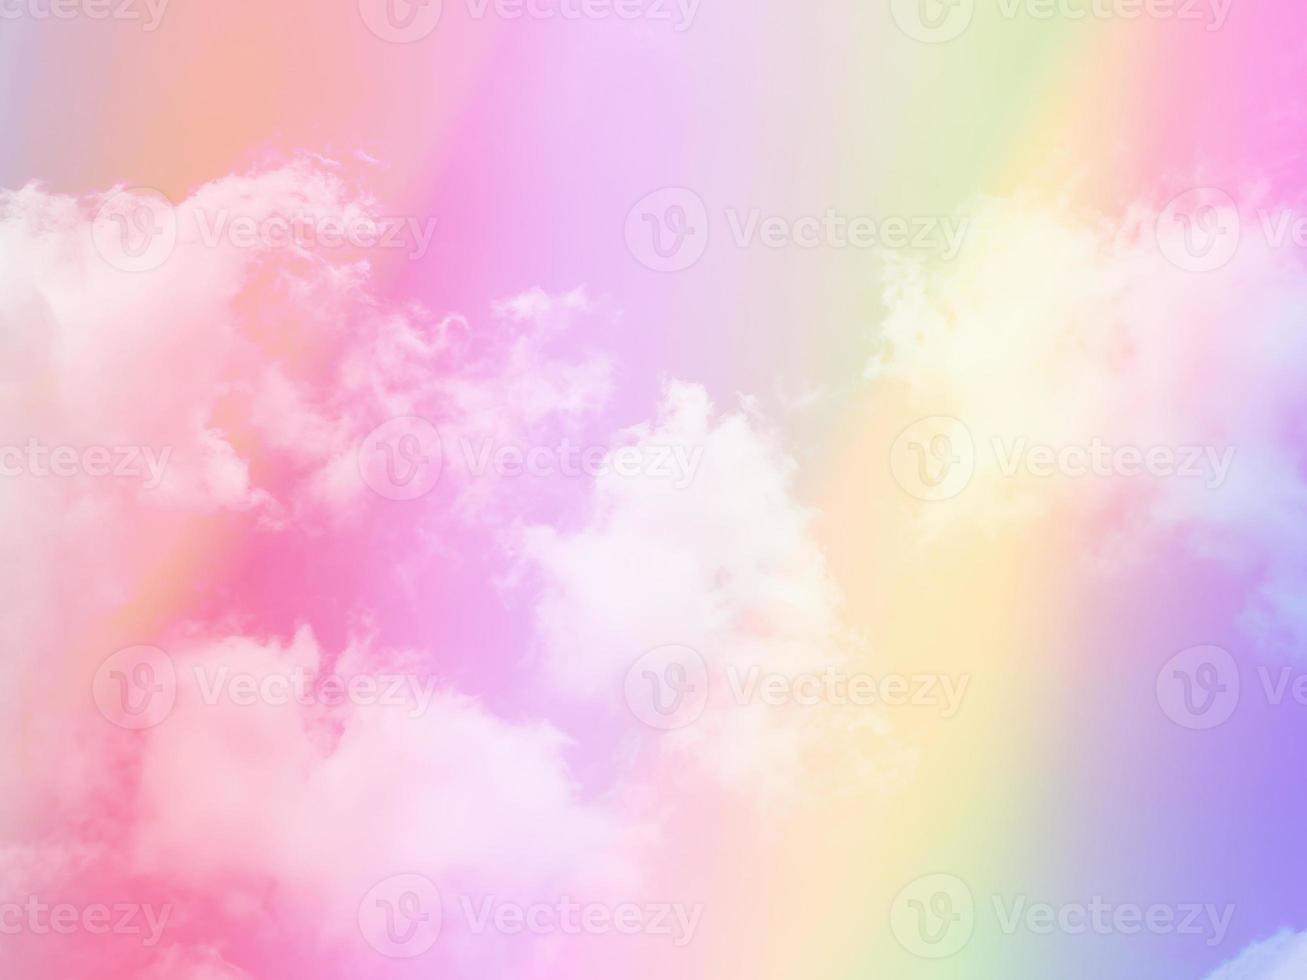 beleza doce pastel rosa amarelo colorido com nuvens fofas no céu. imagem multicolorida do arco-íris. luz de crescimento de fantasia abstrata foto